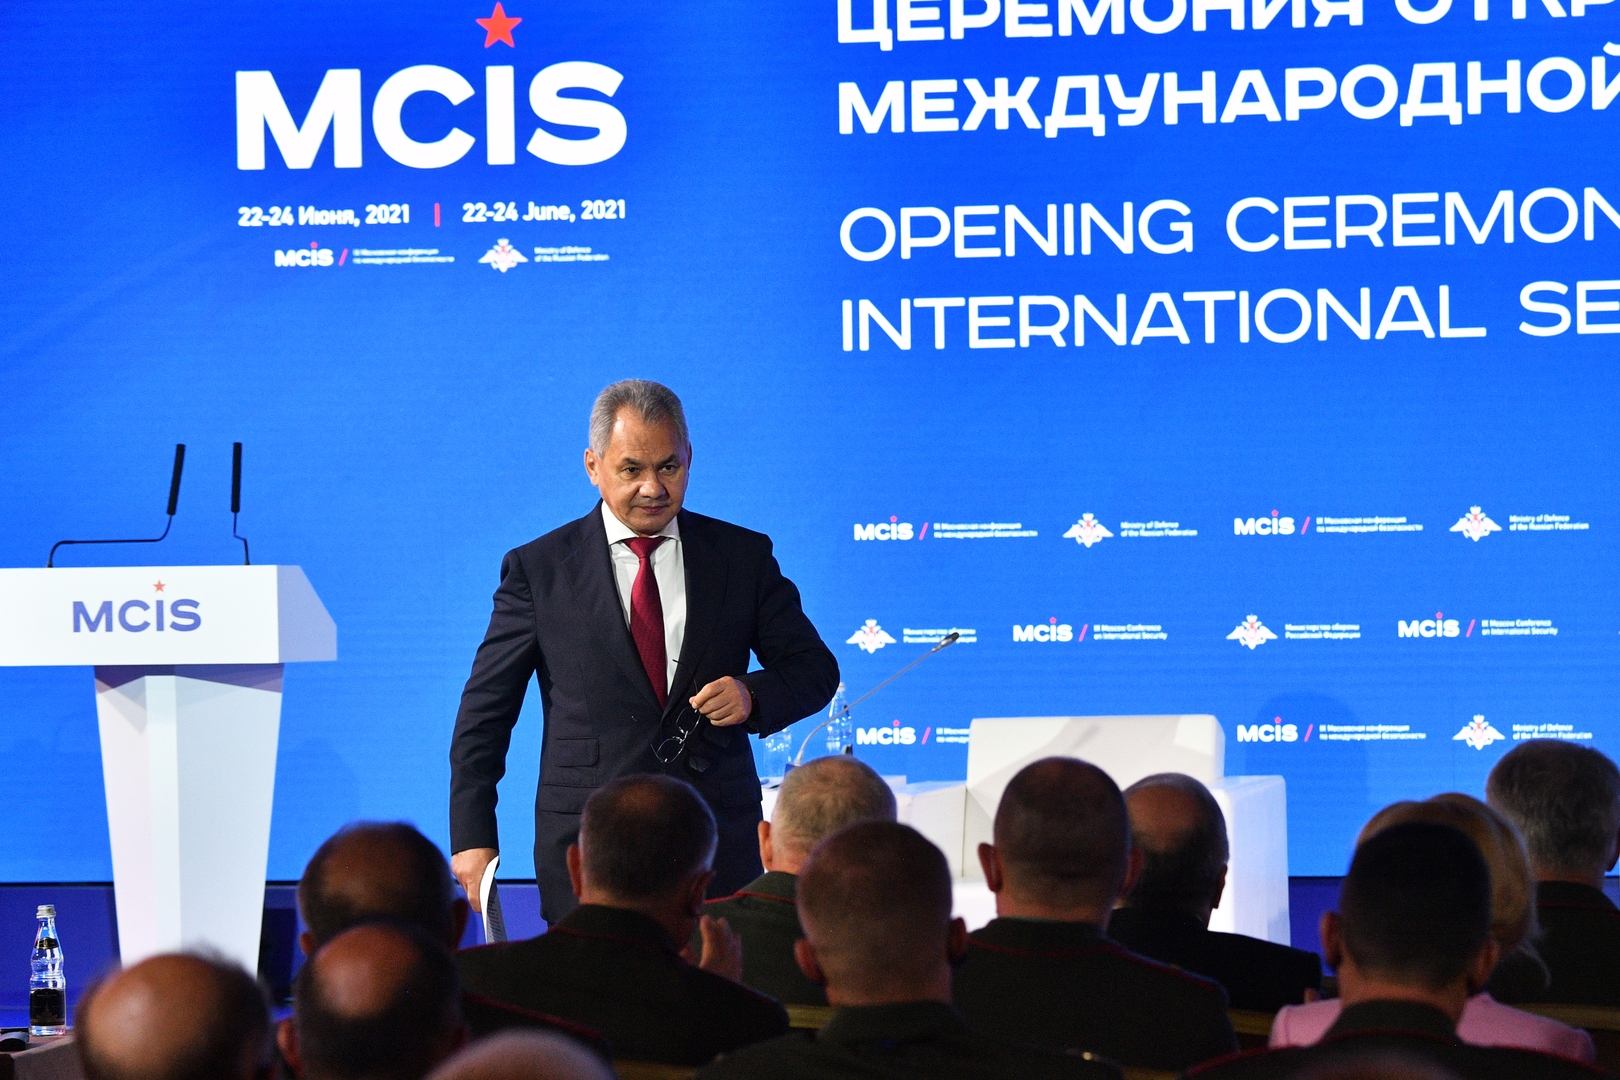 وزير دفاع روسيا يكشف أخطر تهديد في الشرق الأوسط وإفريقيا